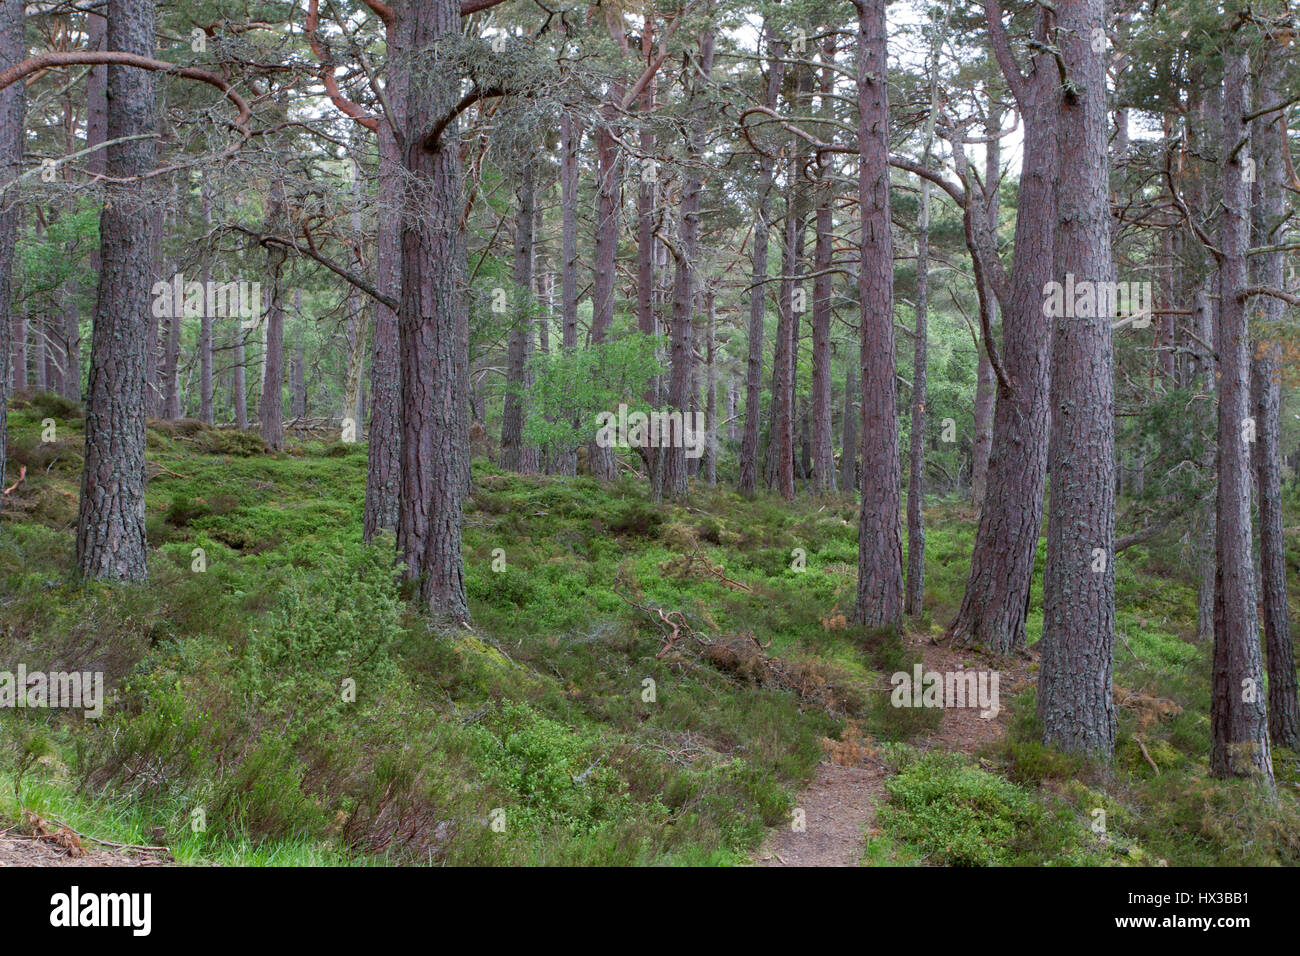 Pin sylvestre, Pinus sylvestris, poussant dans les bois. Rothiemurchus, Ecosse, Royaume-Uni Banque D'Images